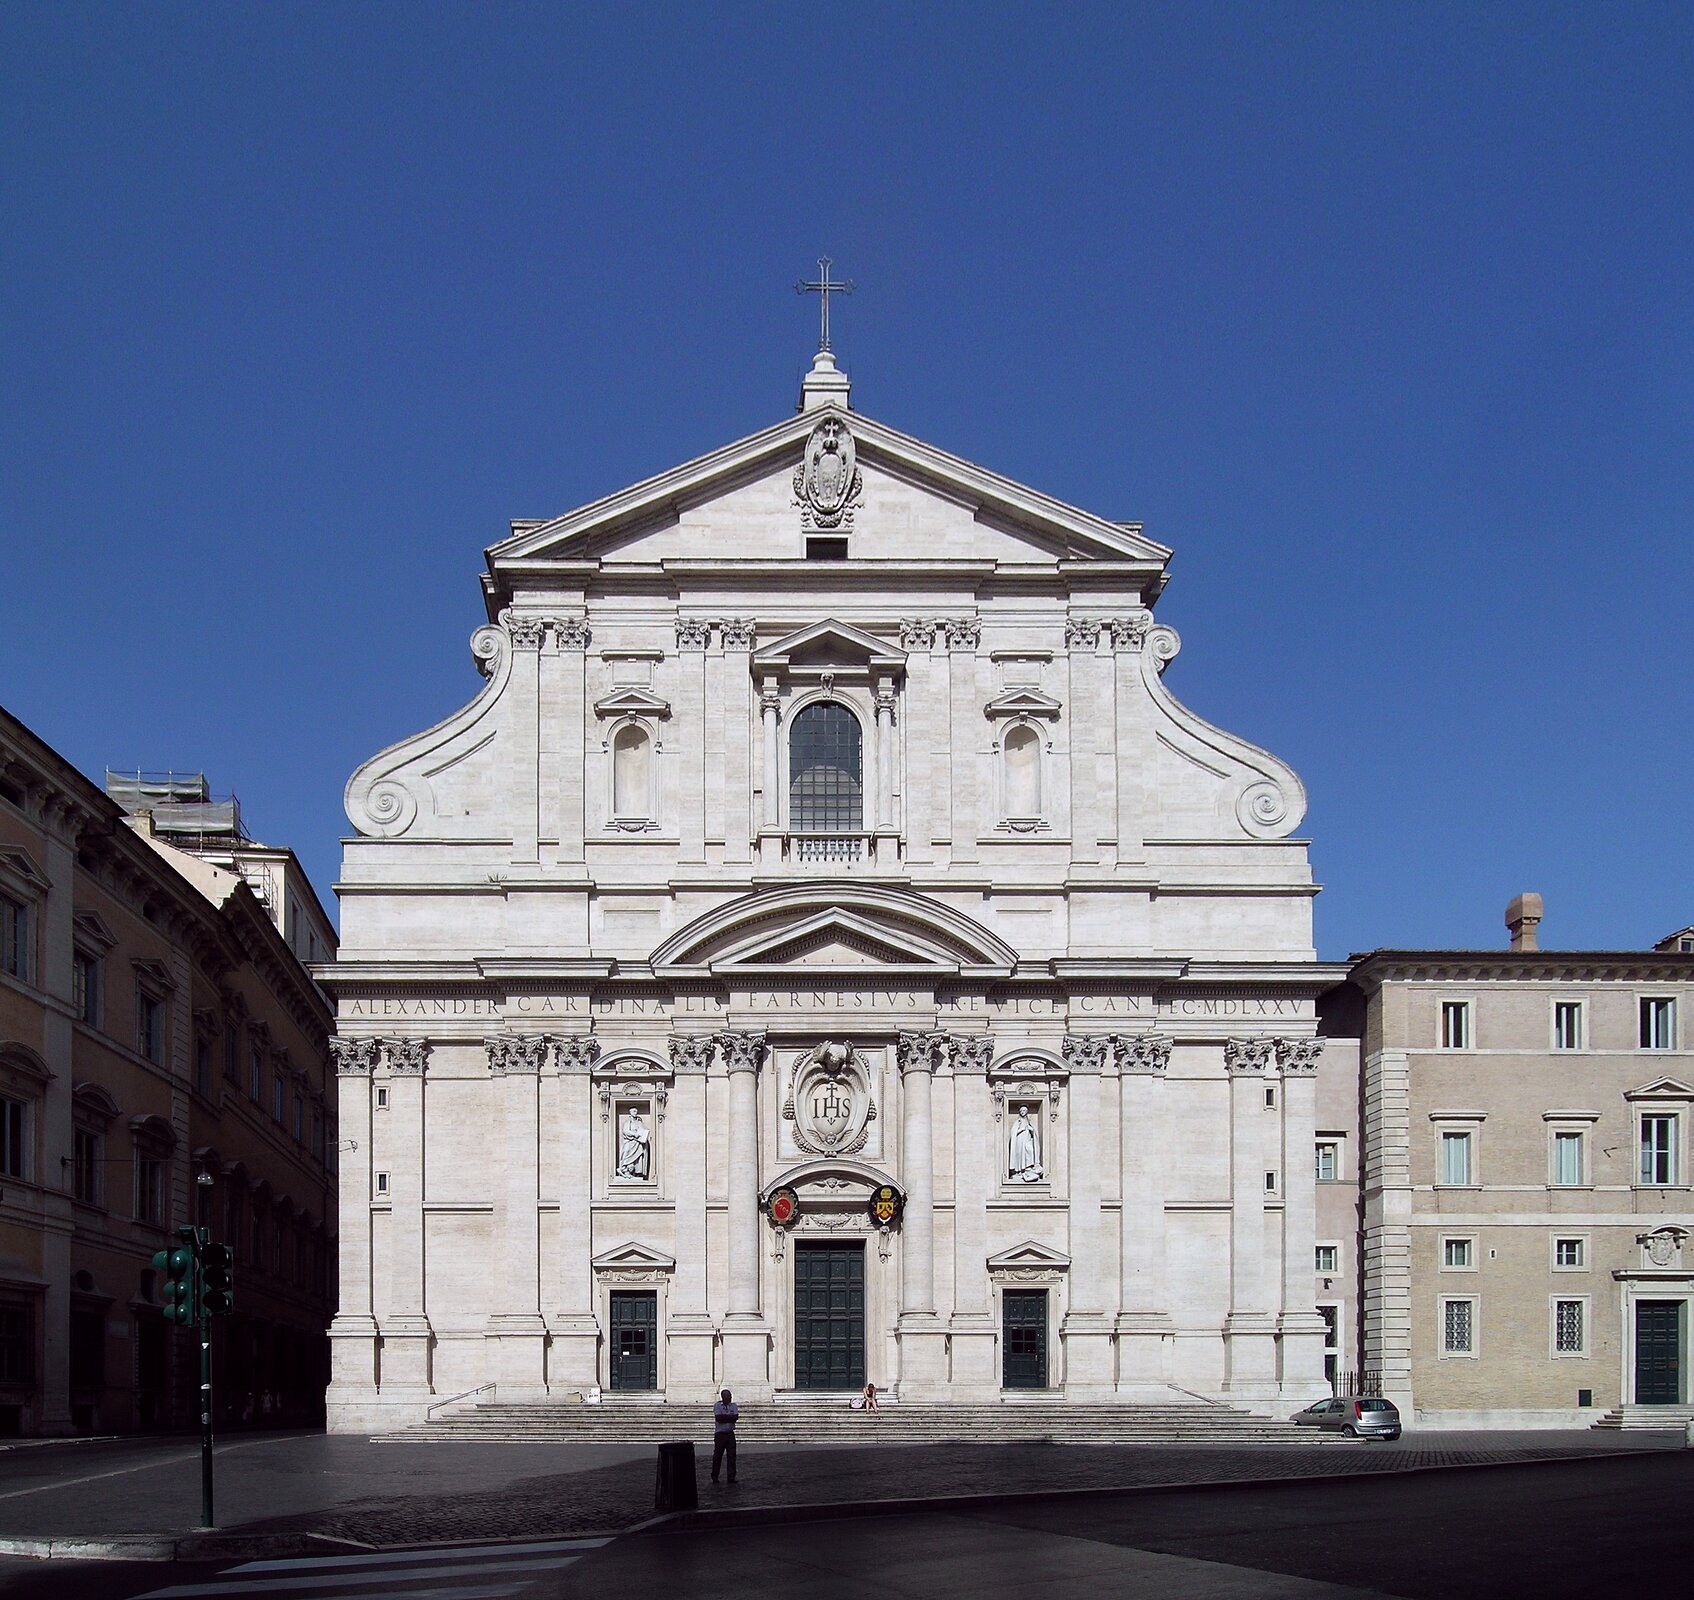 Fasada główna rzymskiego kościoła jezuitów Il Gesu Fasada główna rzymskiego kościoła jezuitów Il Gesu Źródło: Alessio Damato, Wikimedia Commons, licencja: CC BY-SA 3.0.